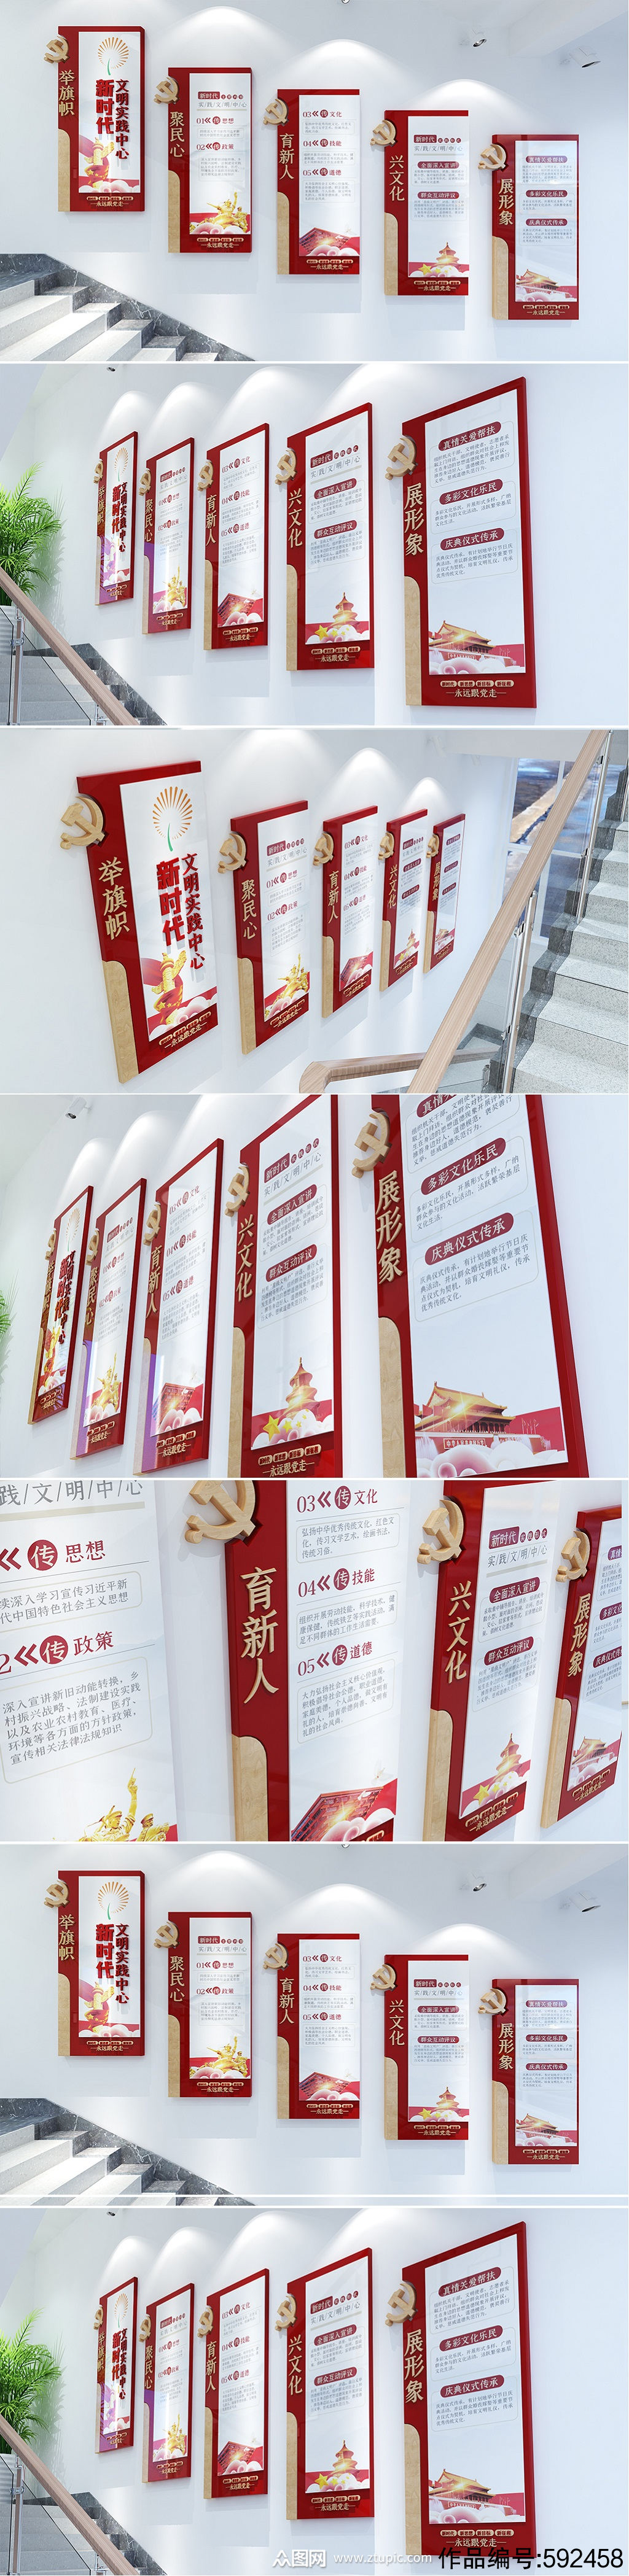 新时代文明实践站楼梯 六传六习 党建文化墙效果图素材